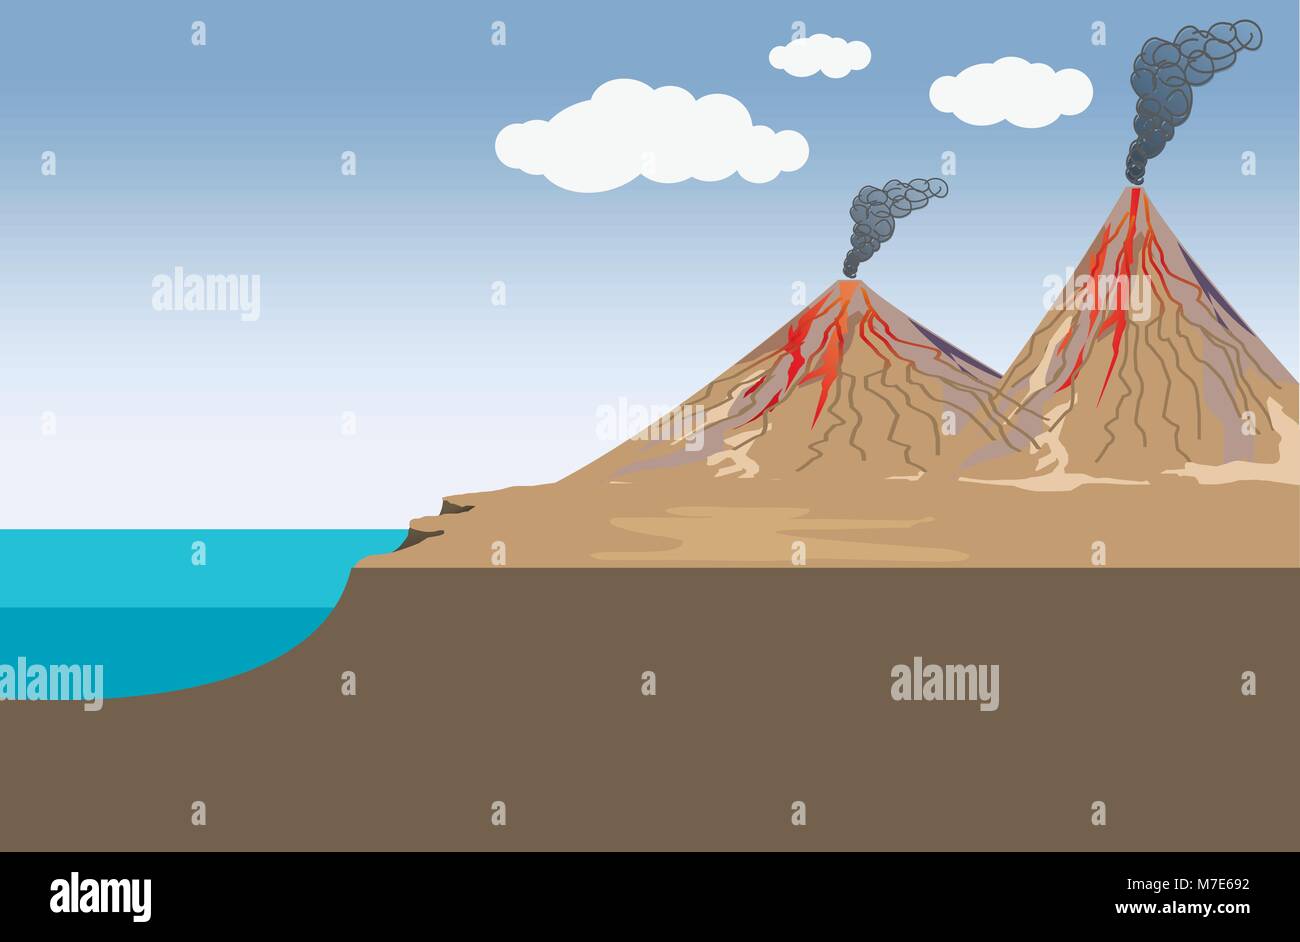 Volcan est une rupture dans la croûte d'un objet de masse planétaire, comme la terre, qui permet à la lave chaude, les cendres volcaniques, et l'échappement des gaz d'un magma cham Illustration de Vecteur